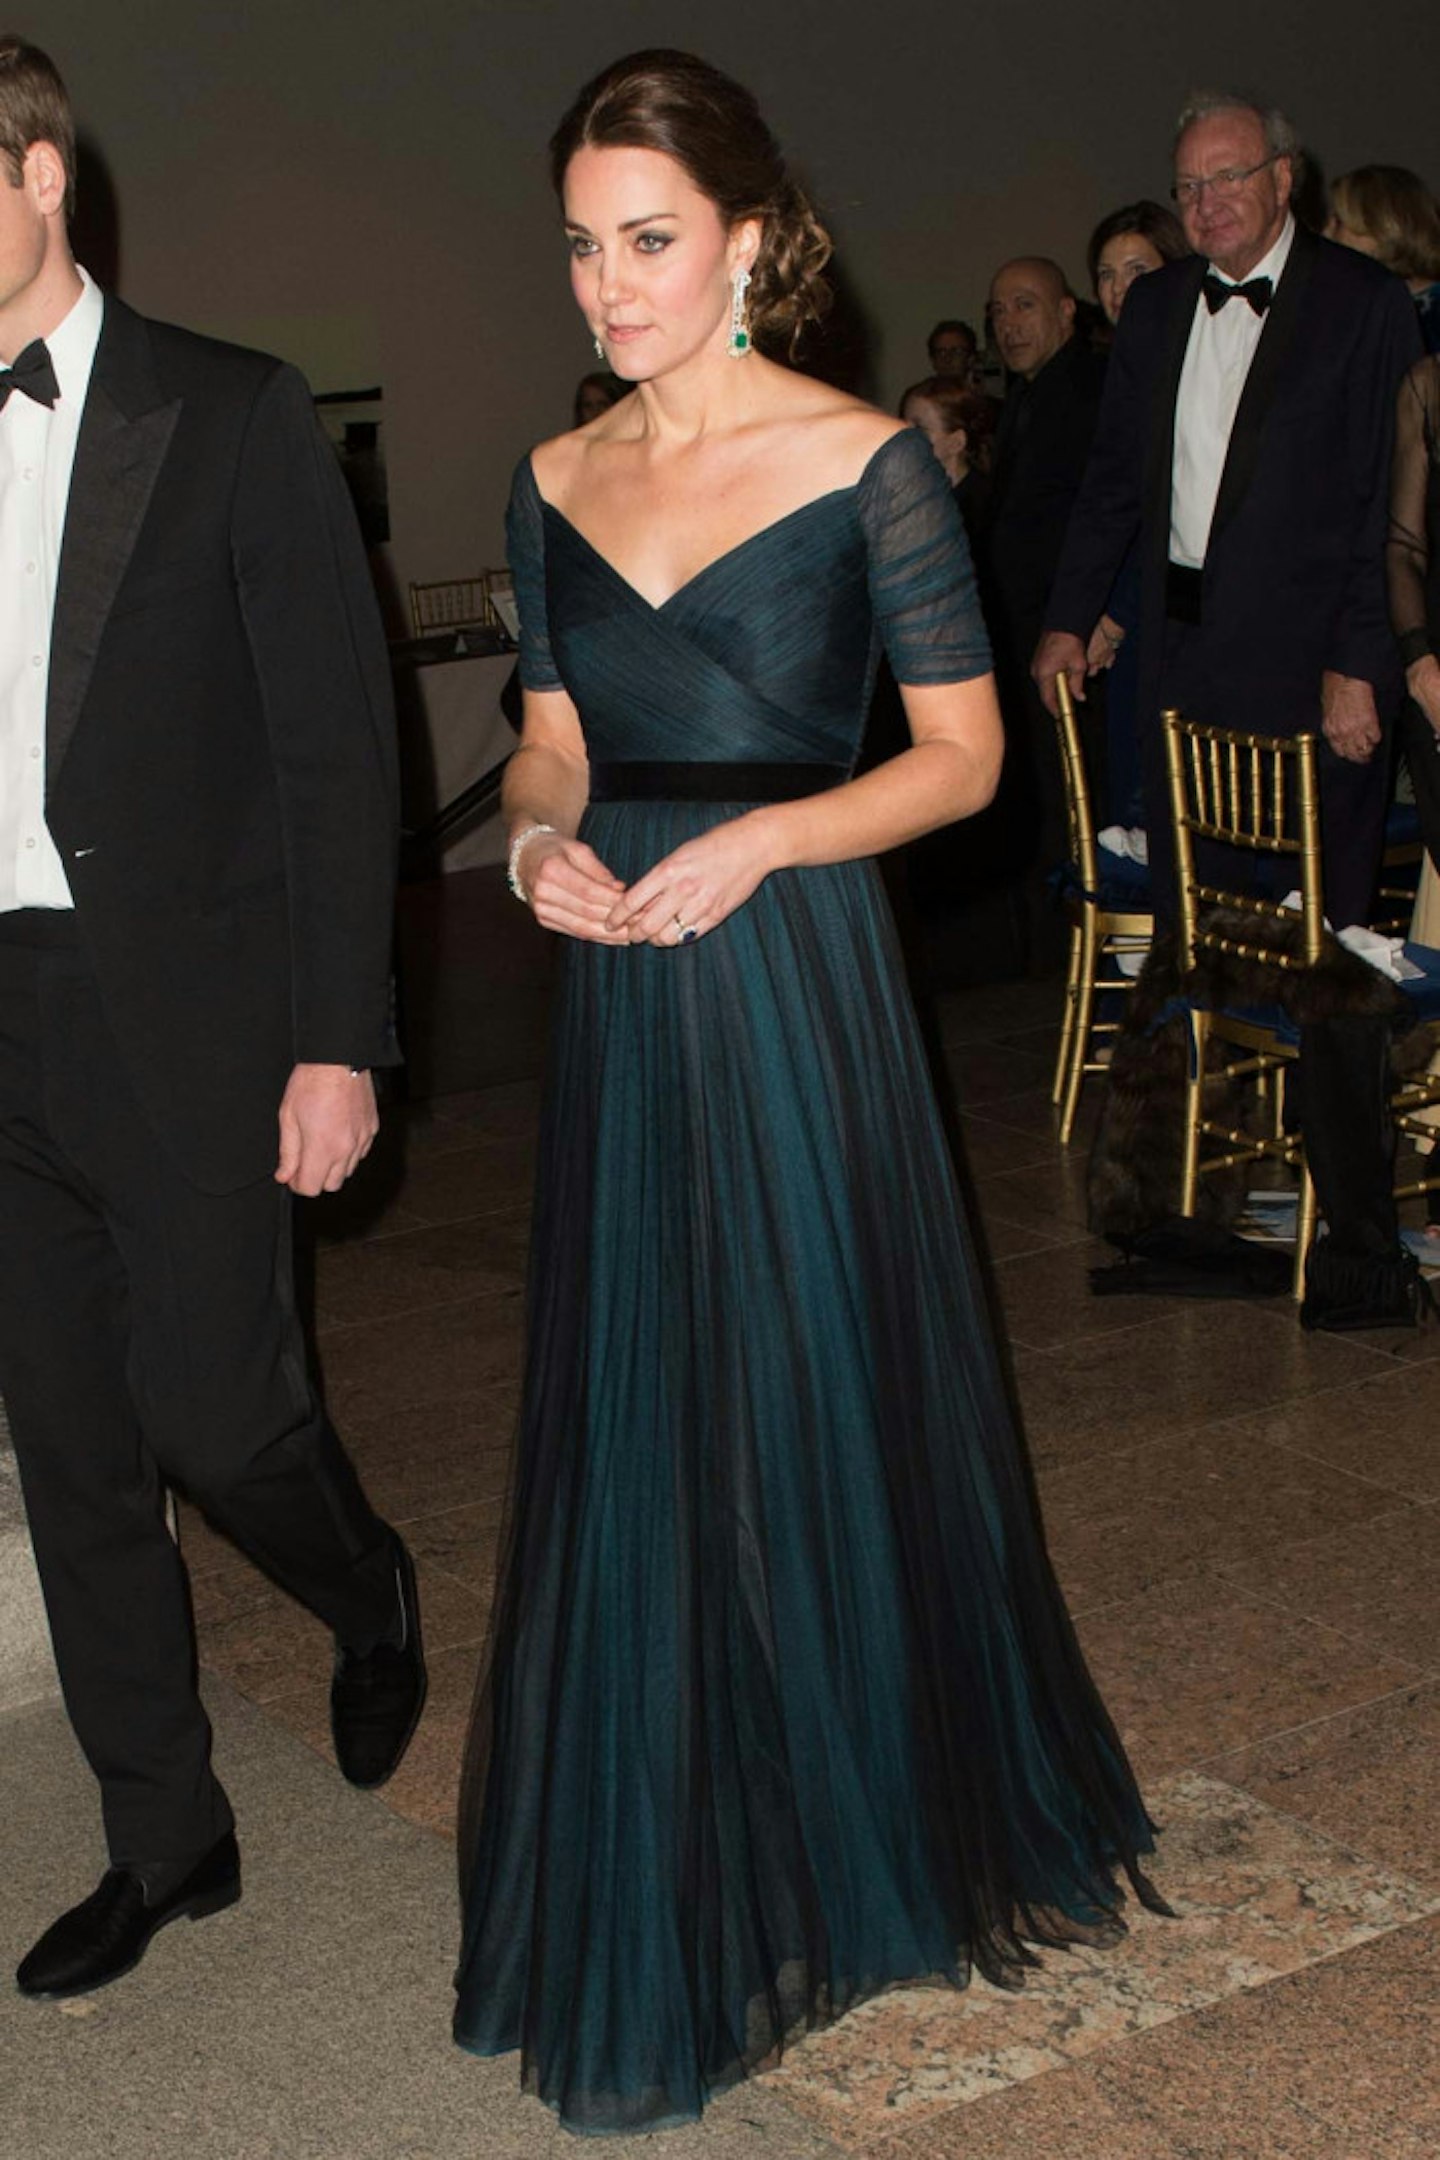 Kate Middleton wears Jenny Packham dress at St. Andrews 600th Anniversary Dinner, 9 December 2014